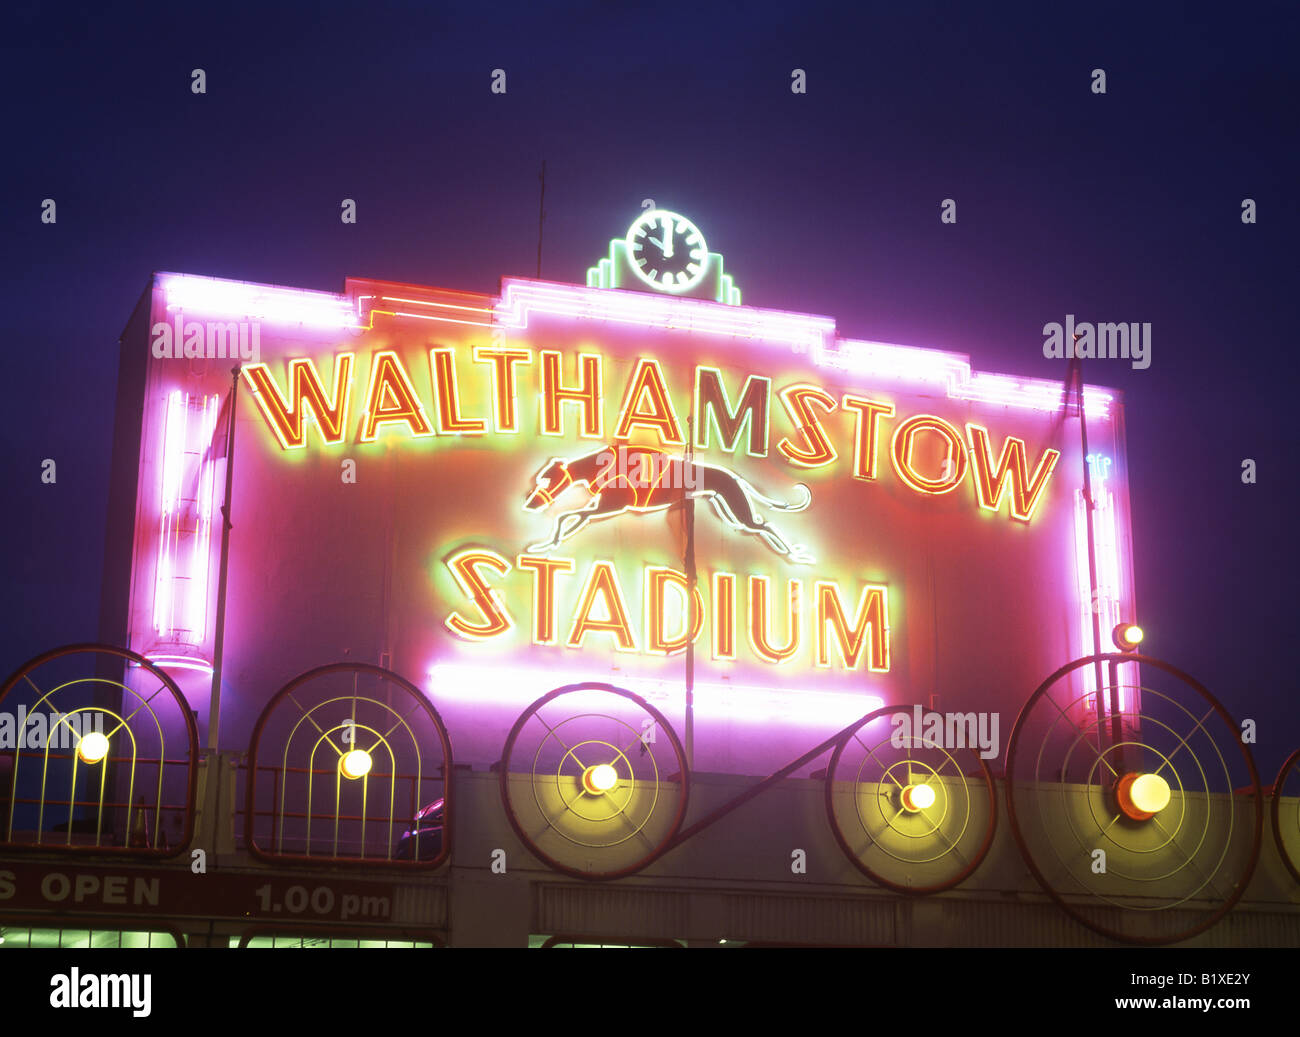 Walthamstow Stadium Greyhound-Rennbahn Hund East End London England UK Großbritannien britische GB UK Stockfoto